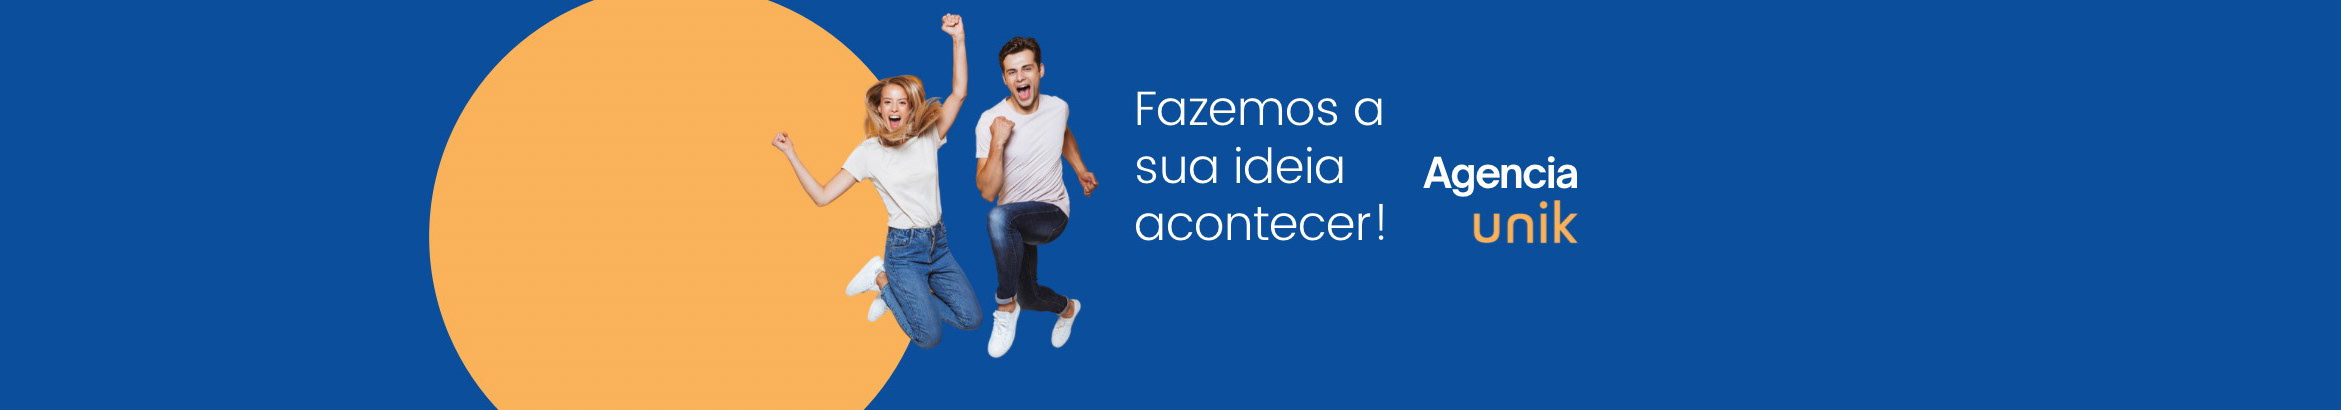 Баннер профиля Agência Unik